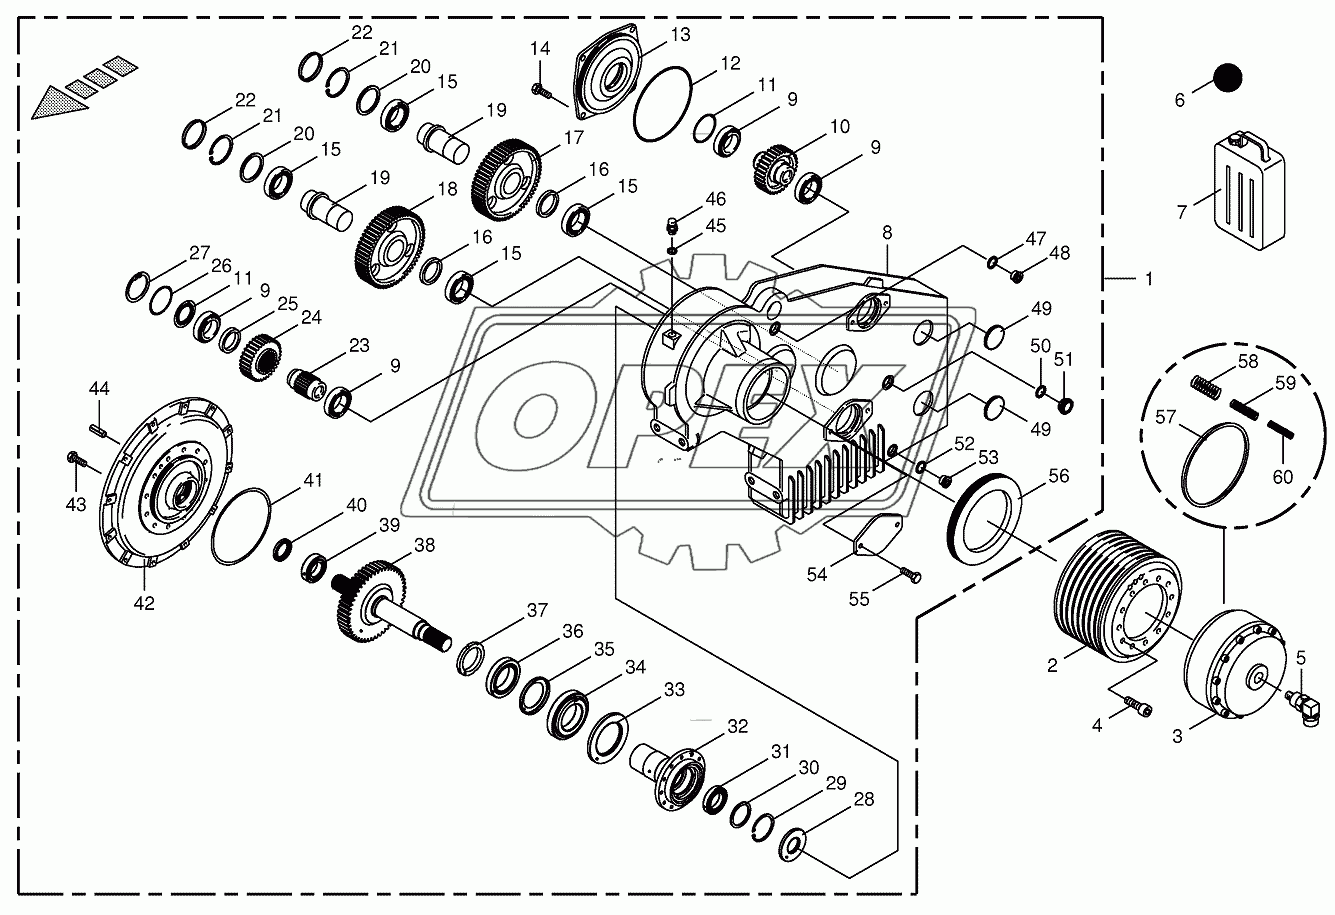 Motor output gear 2